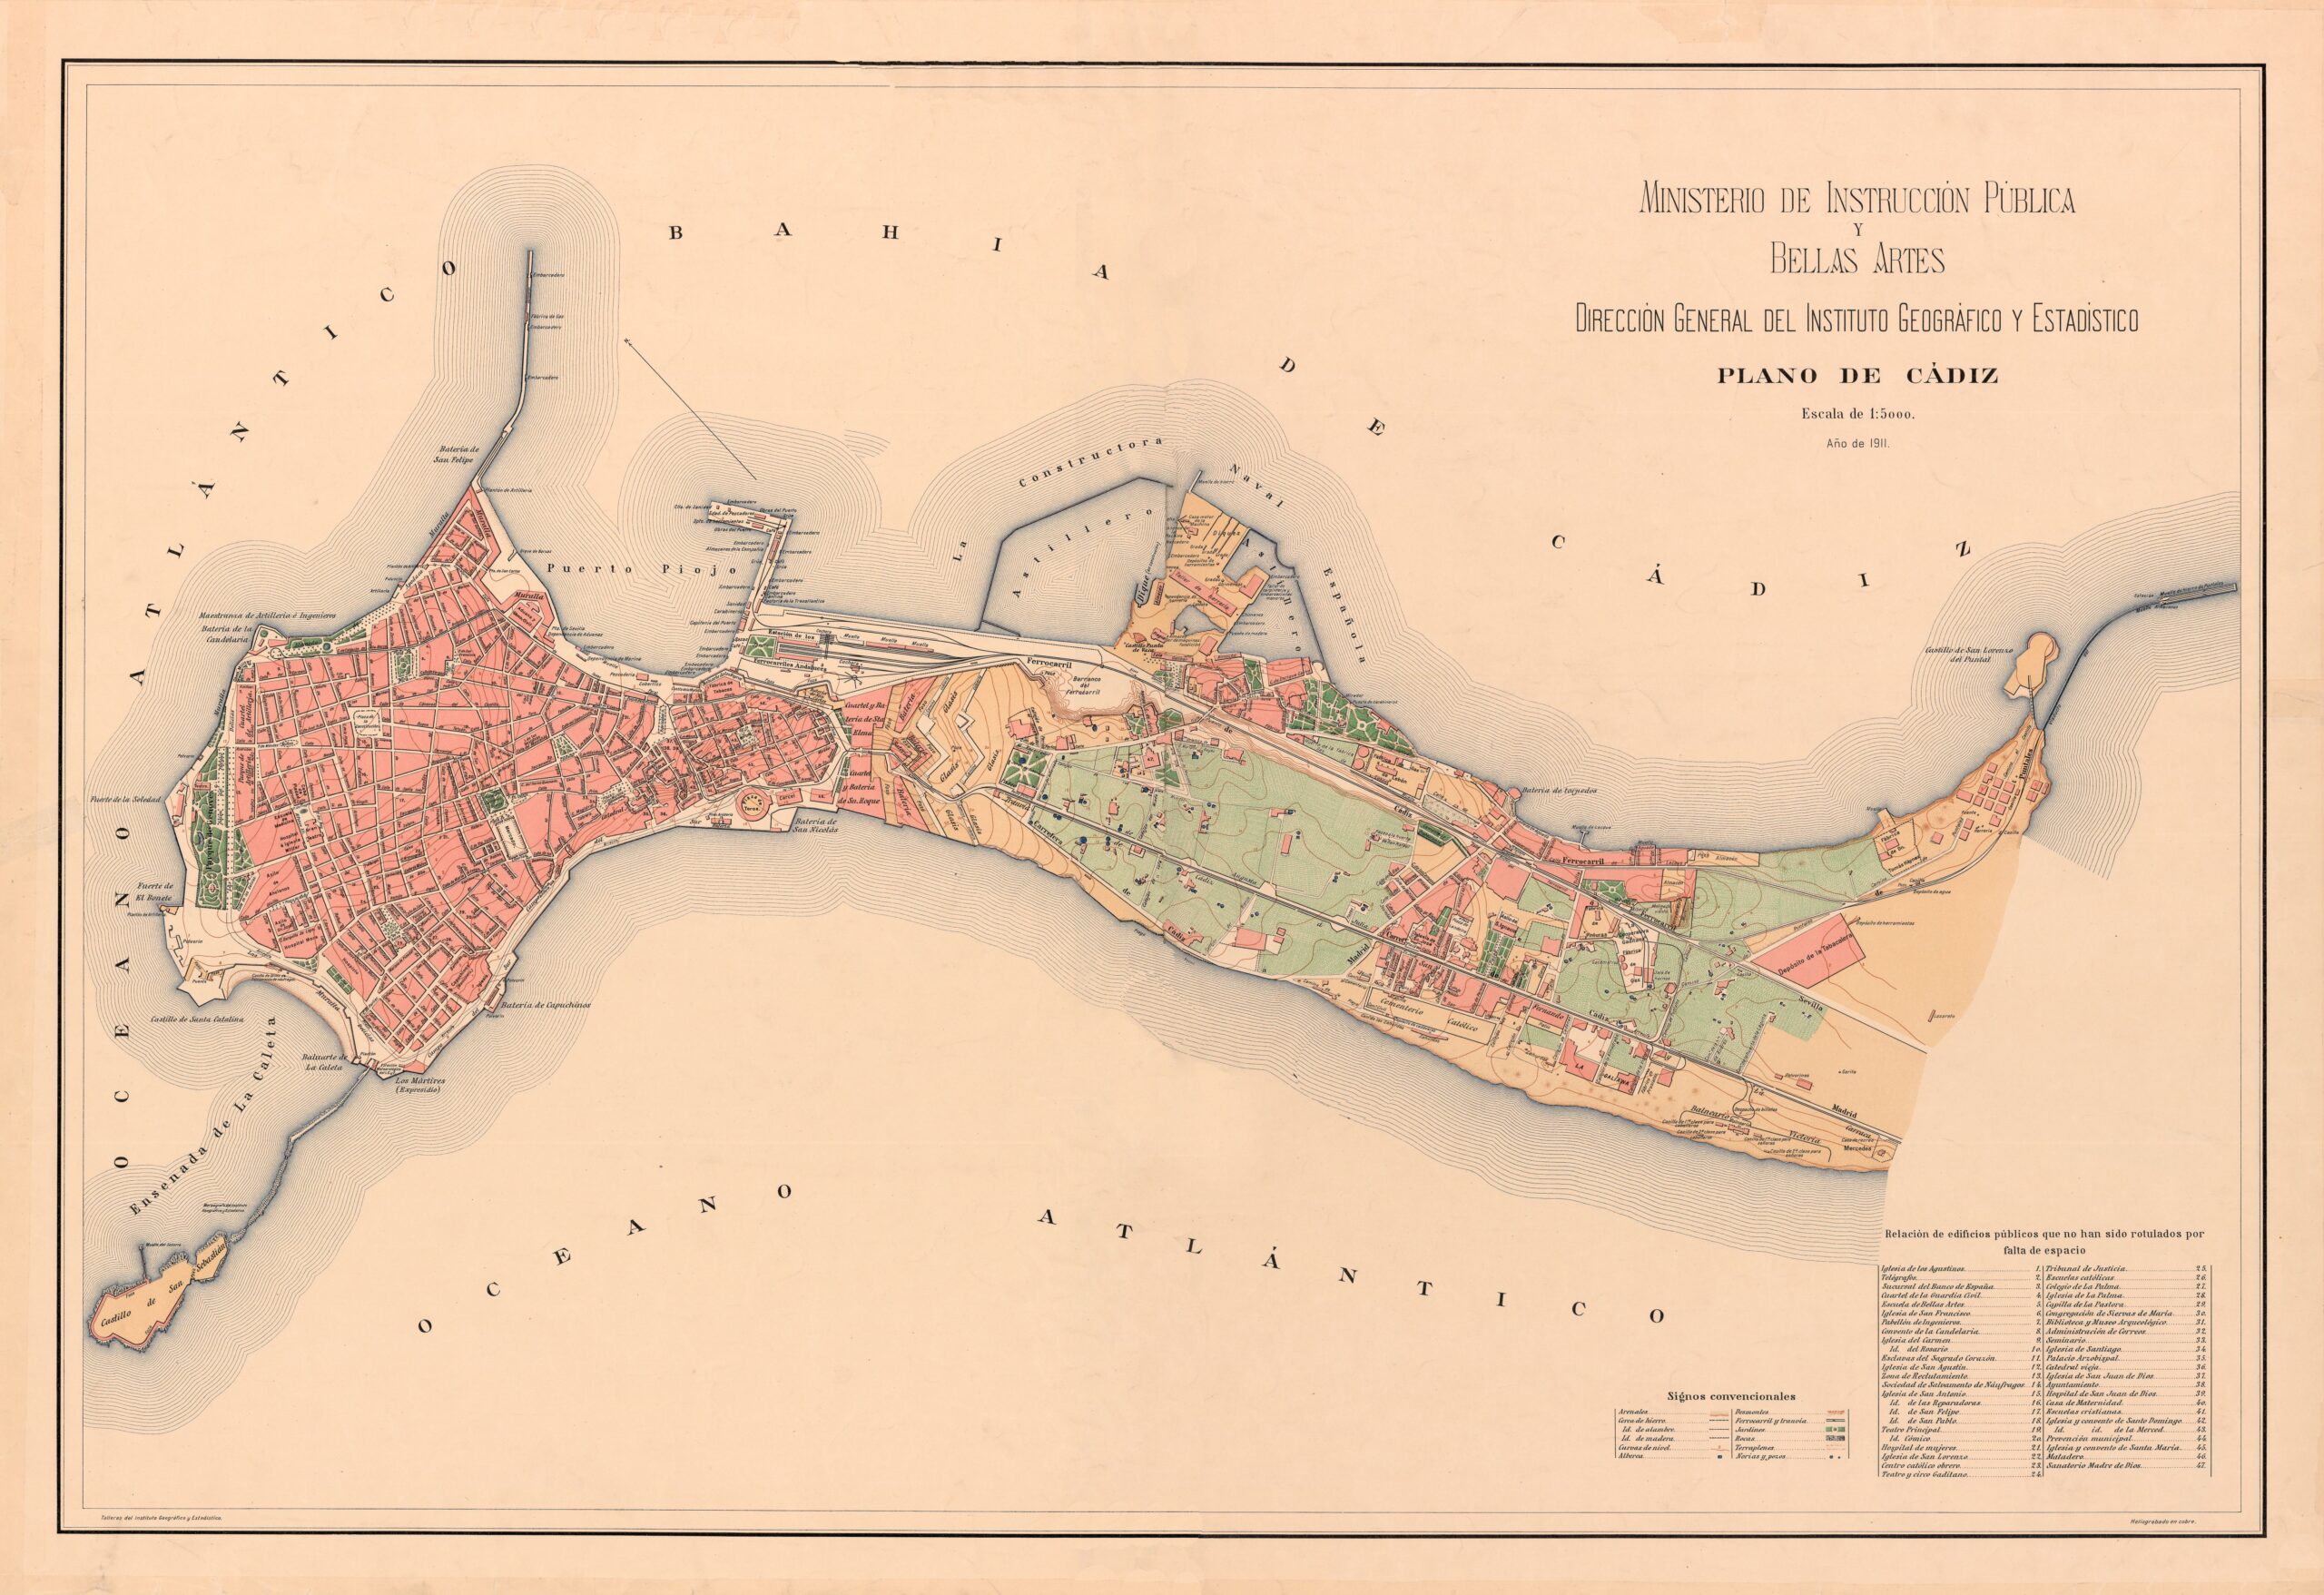 Plano de Cádiz (1911)